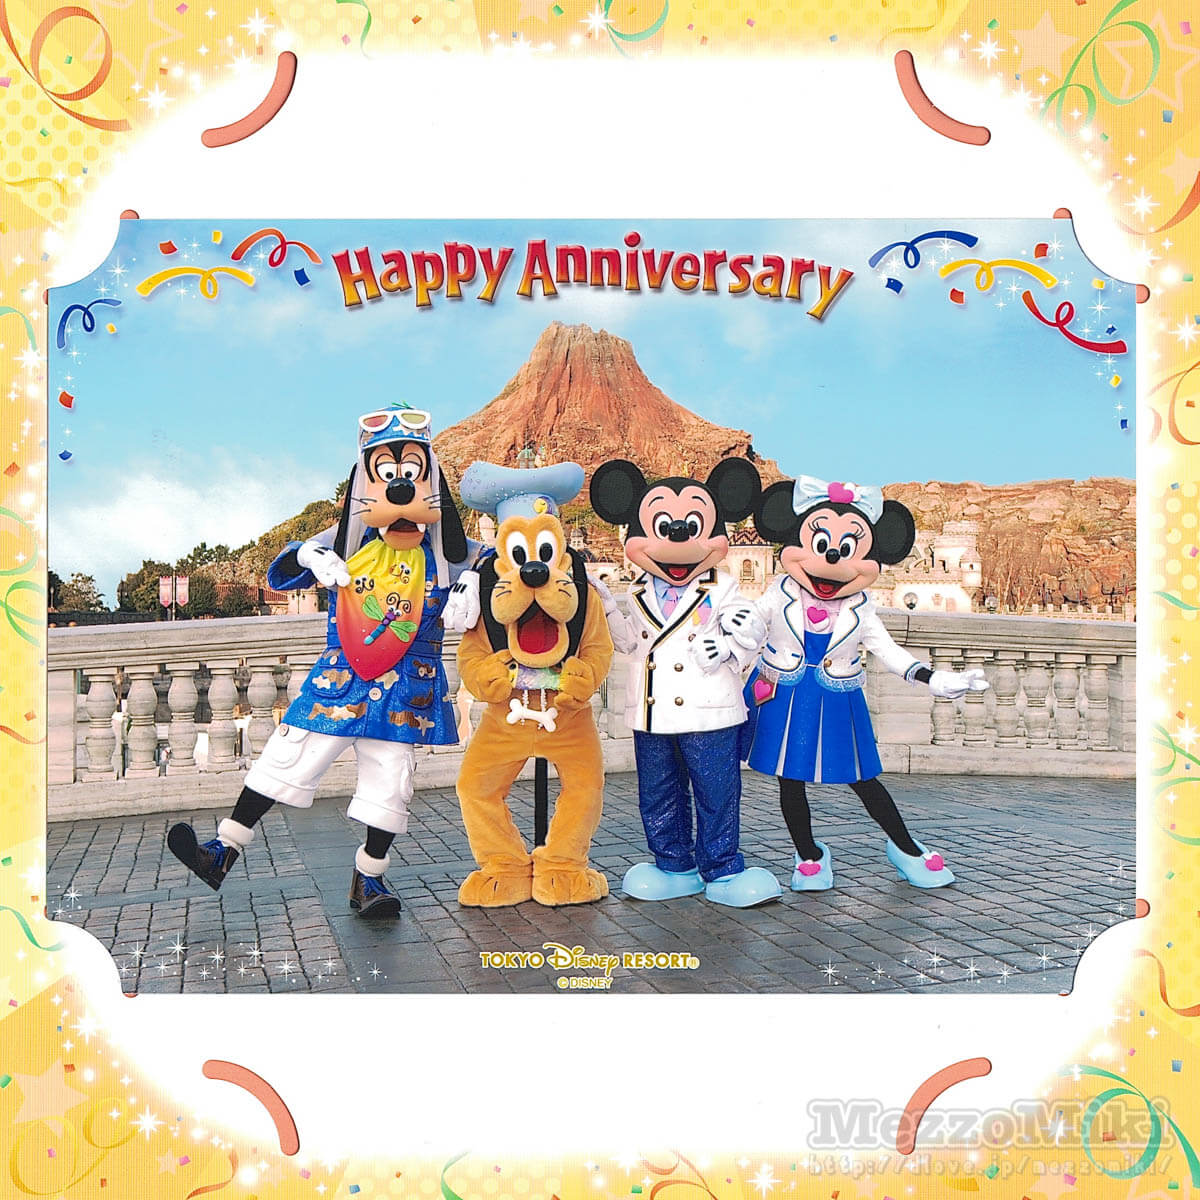 東京ディズニーシー2018早春｢Happy Anniversary｣スナップフォト